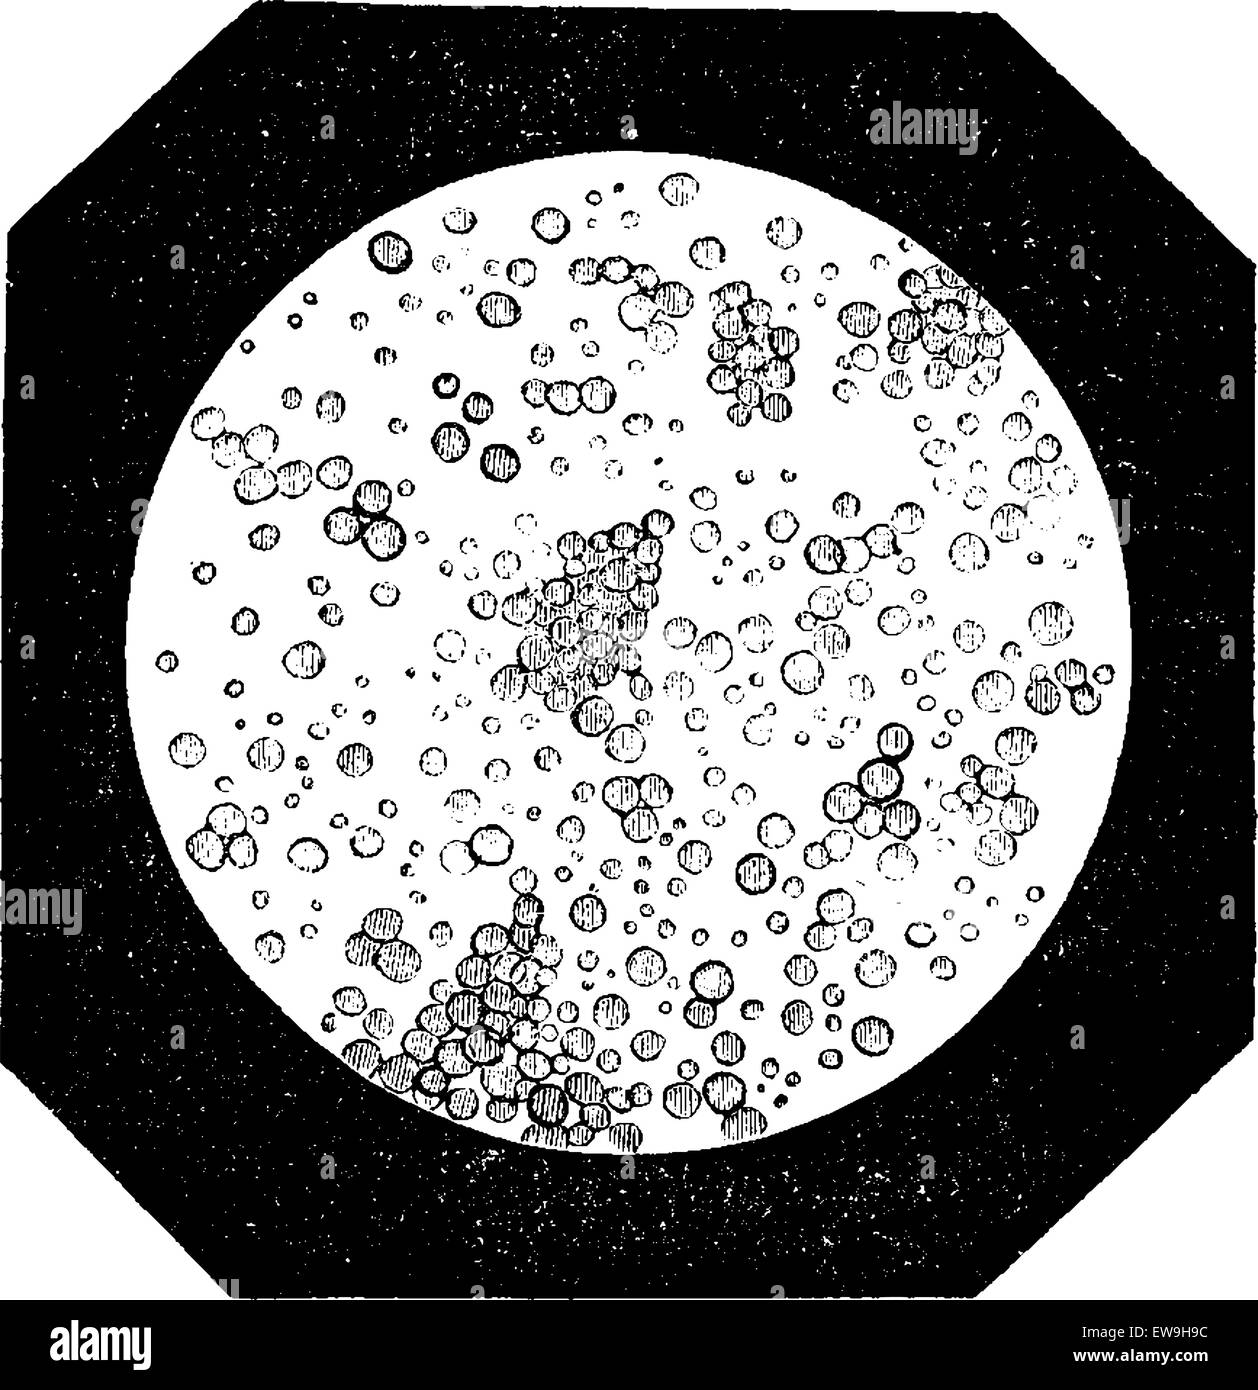 Globules de gras comme vu sous un microscope, vintage engraved illustration. Dictionnaire de médecine habituelle par le Dr Labarthe - 1885 Illustration de Vecteur